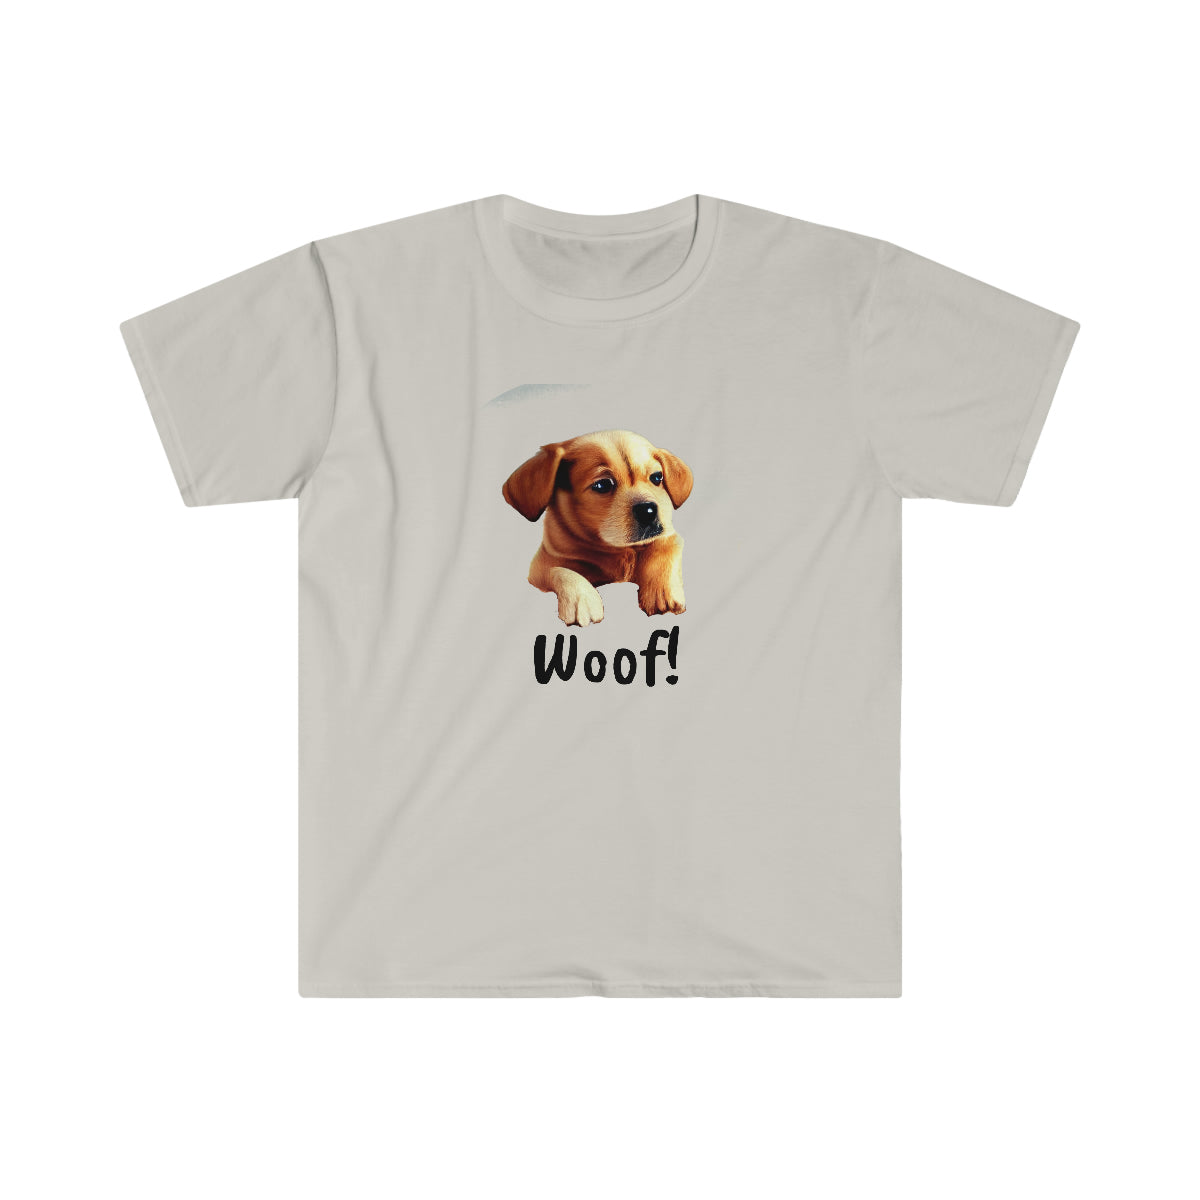 Woof! - Unisex Softstyle T-Shirt